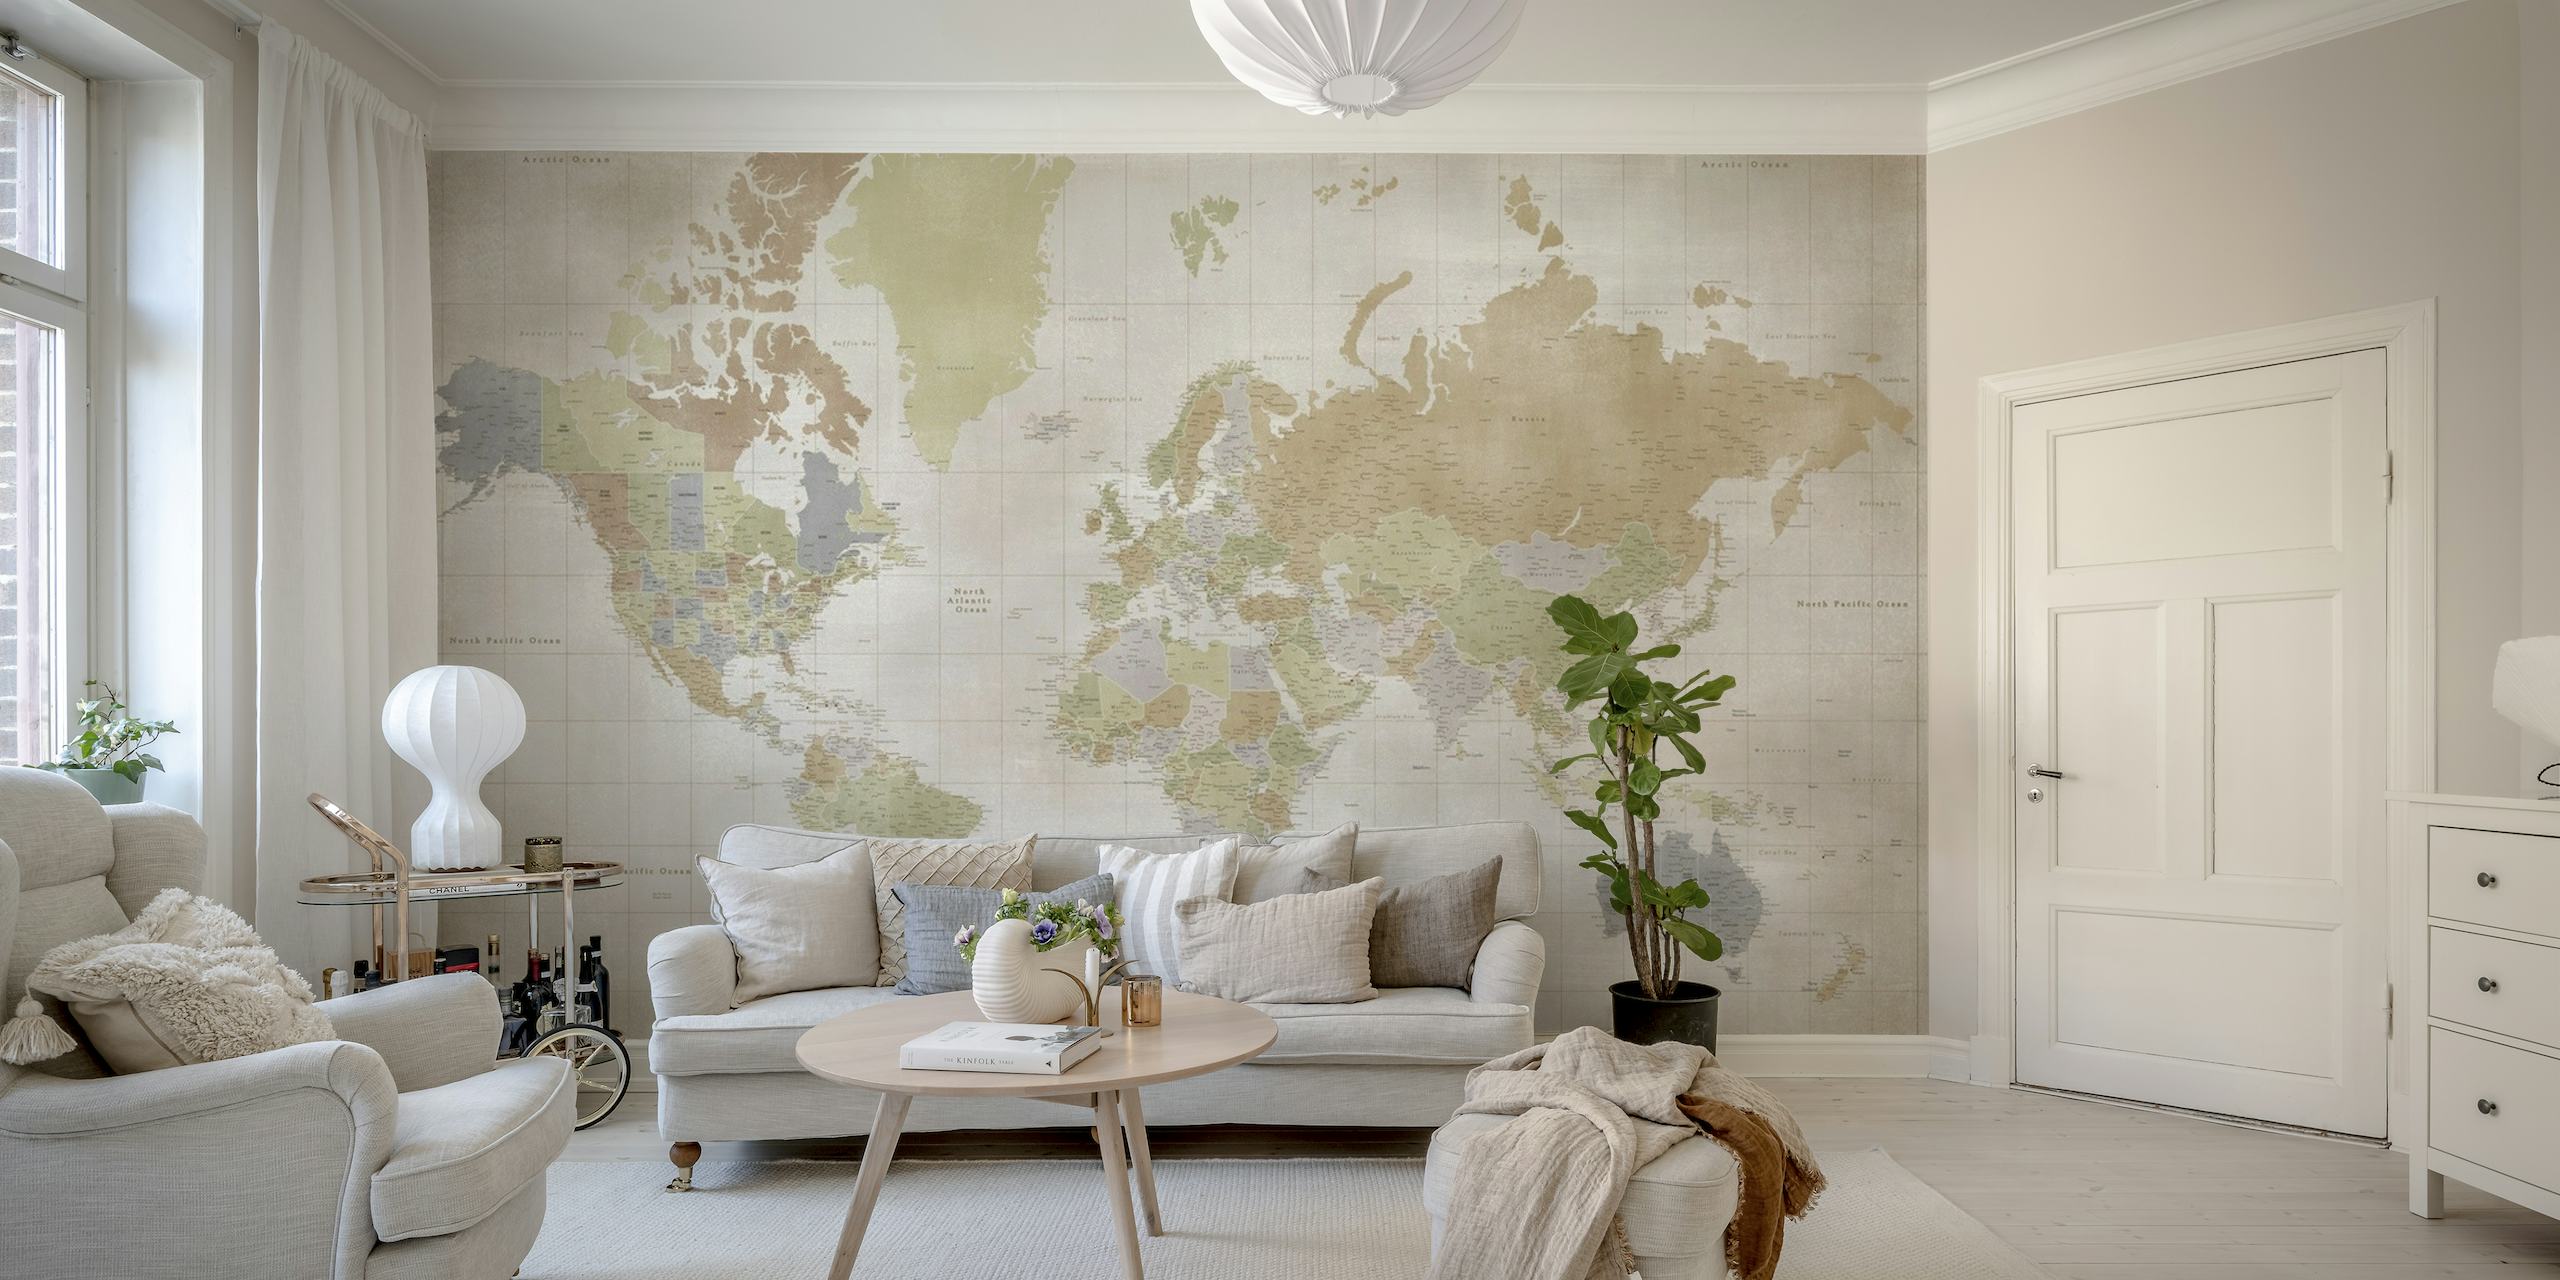 High detail world map Michelle wallpaper